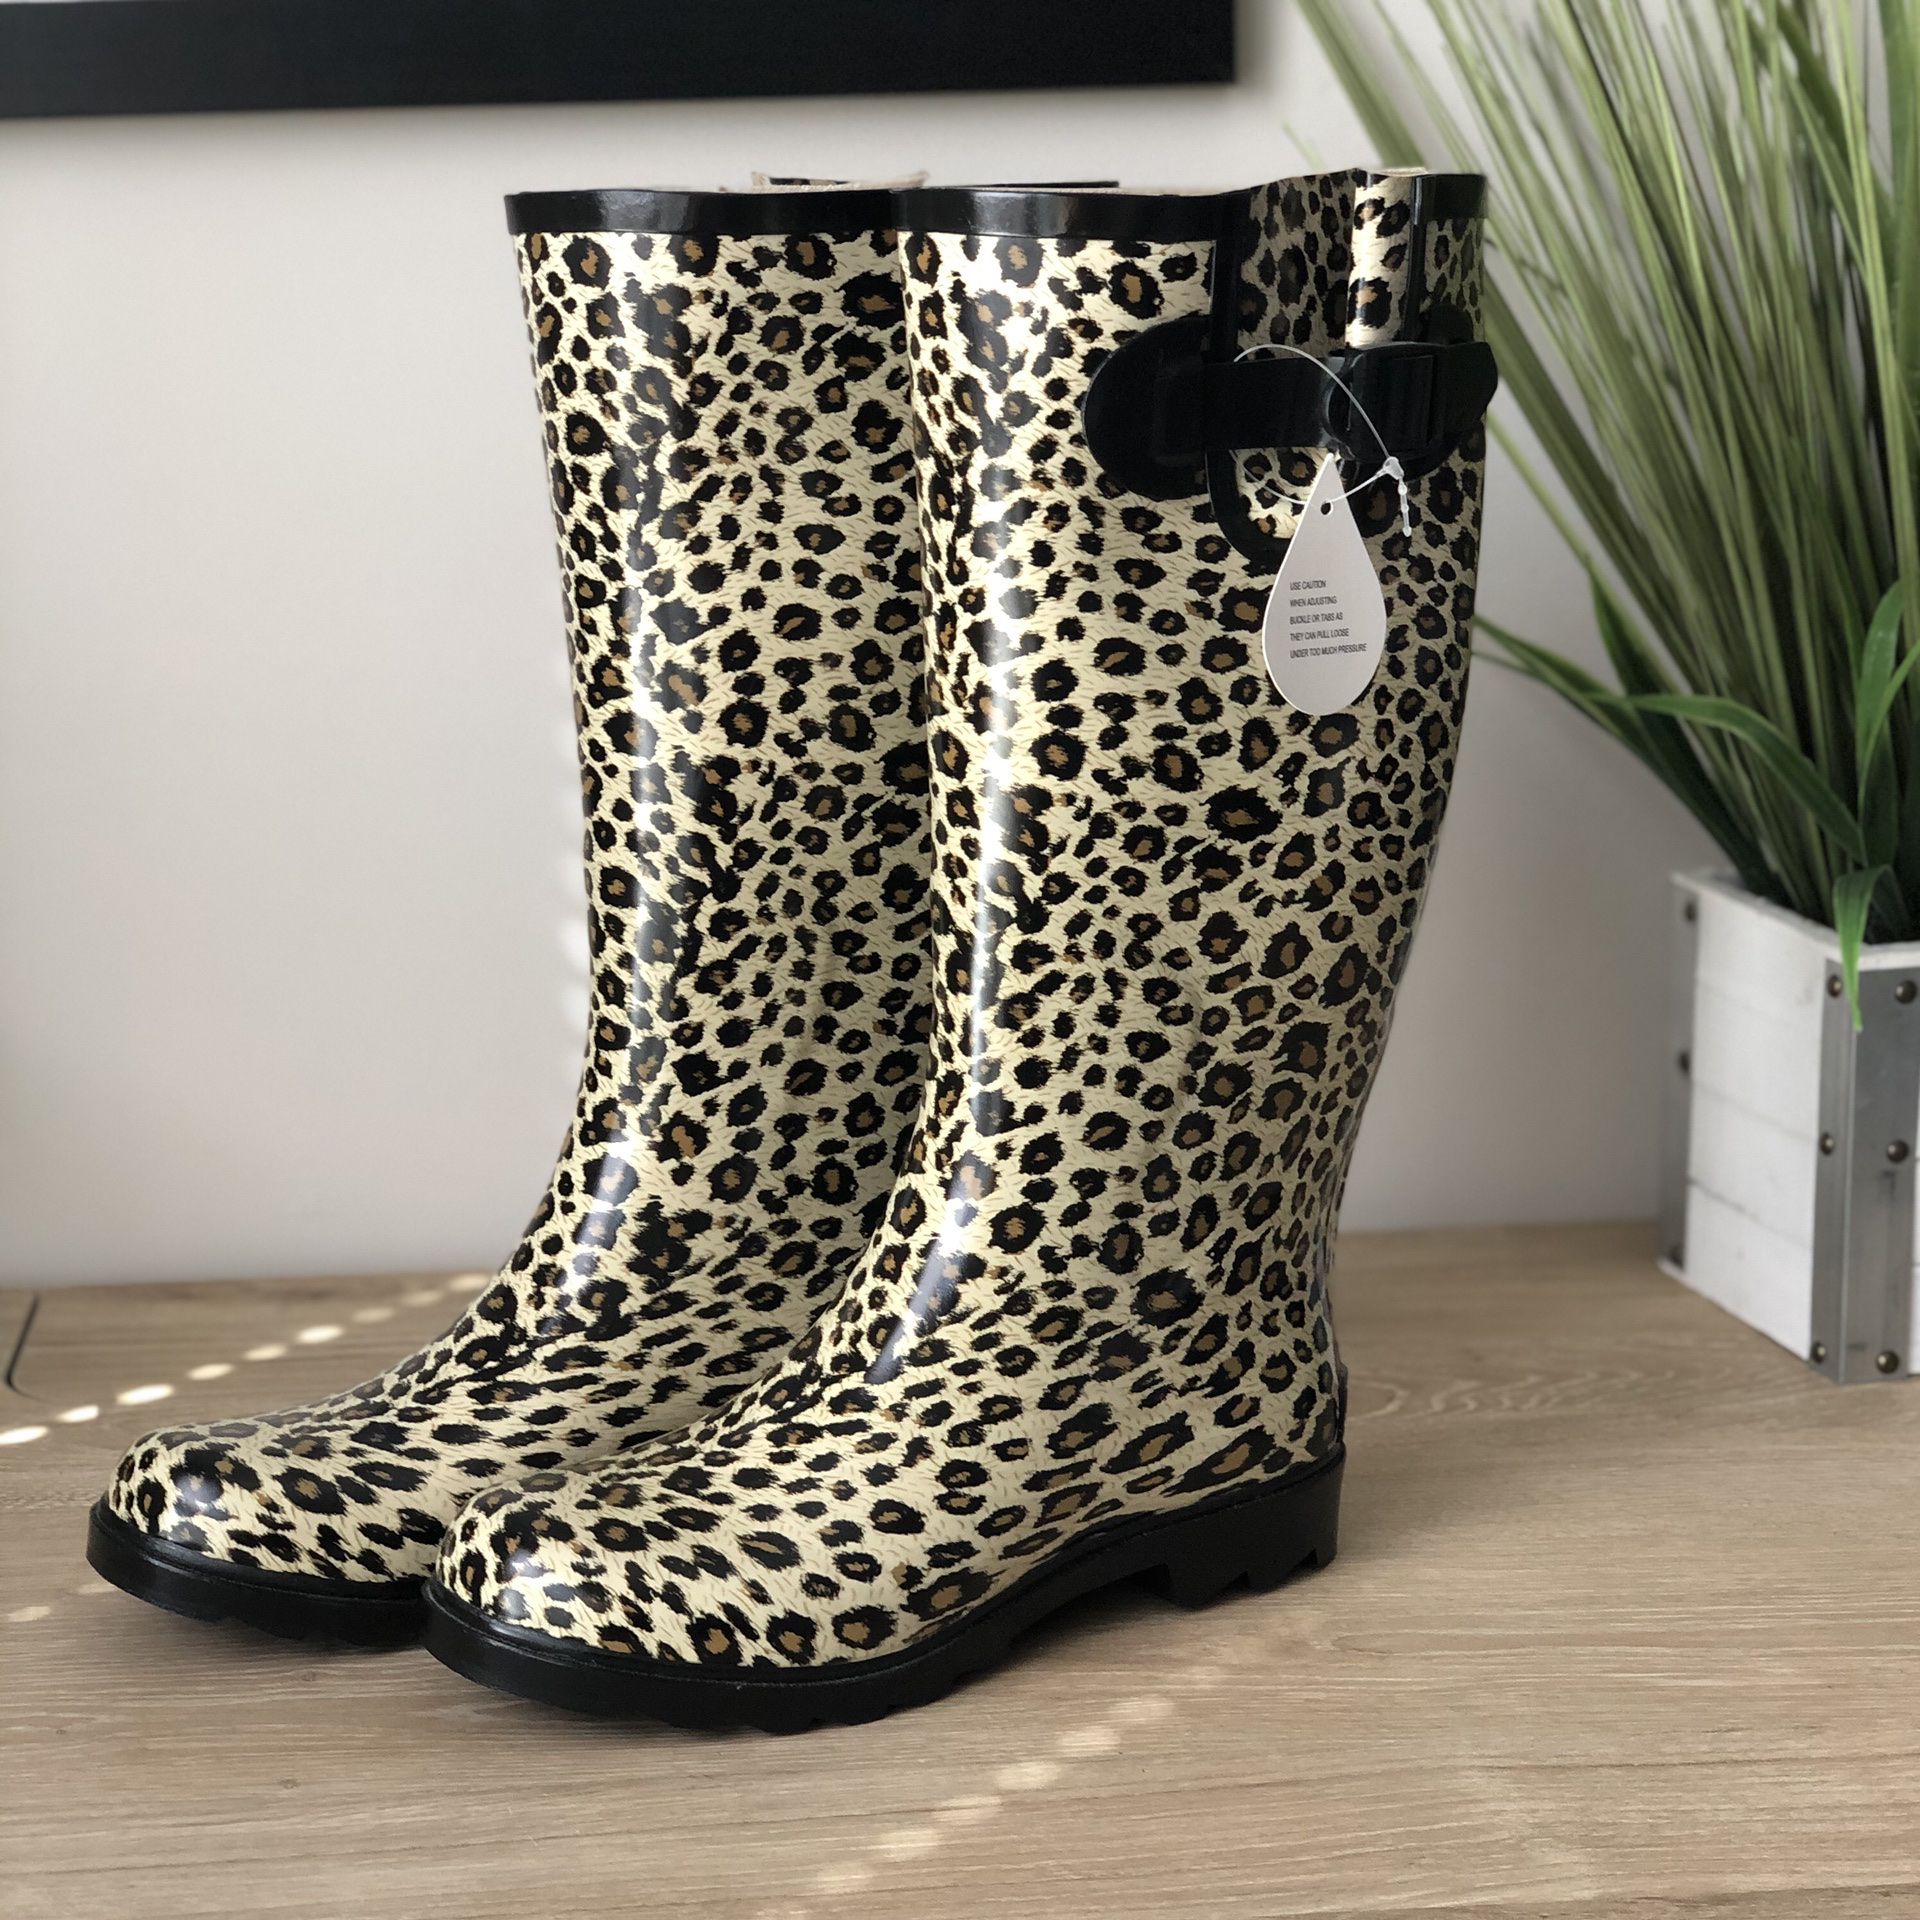 NWT Leopard Print Rain Boots - Size 7